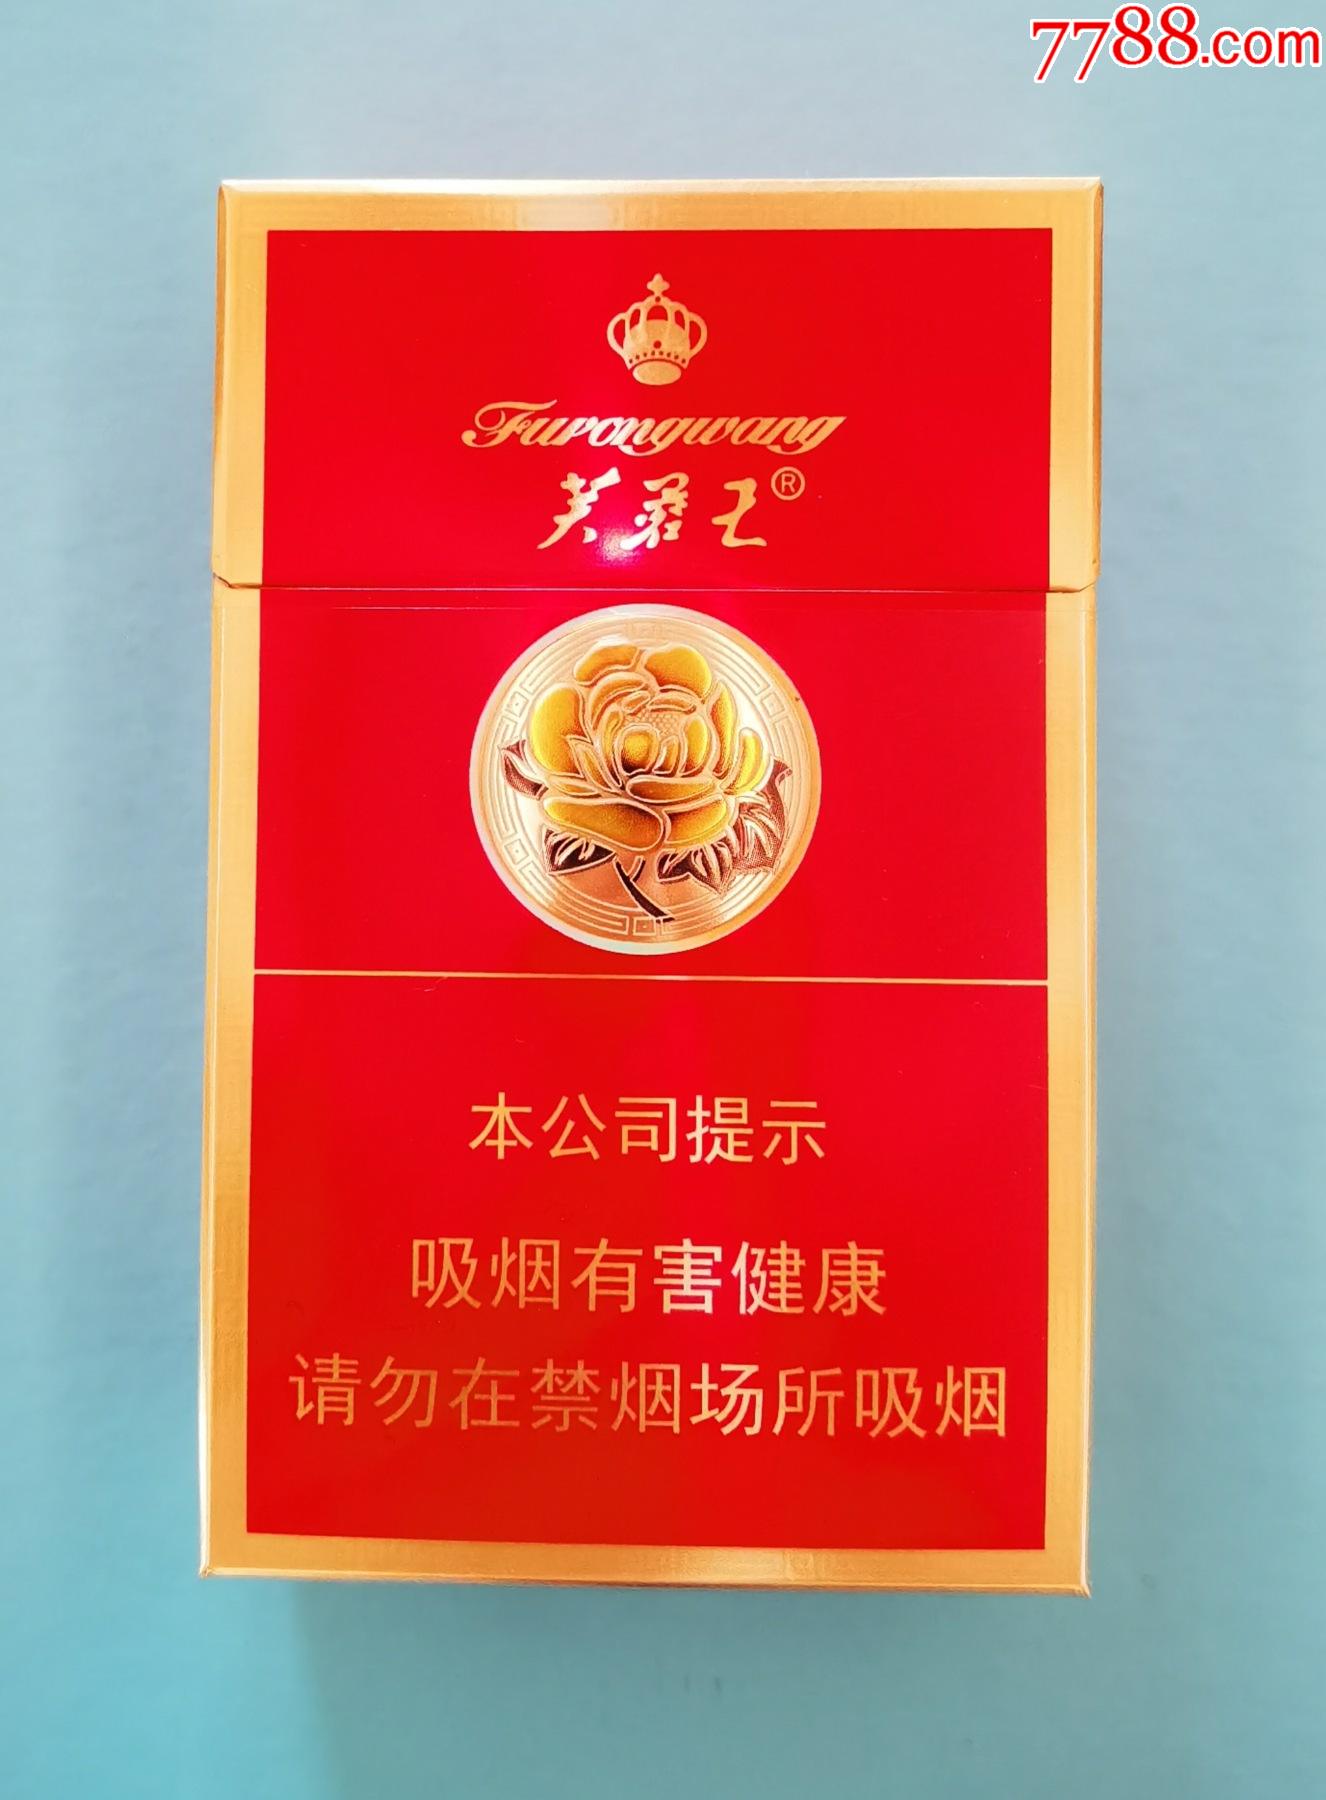 芙蓉王烟价格表 红色图片